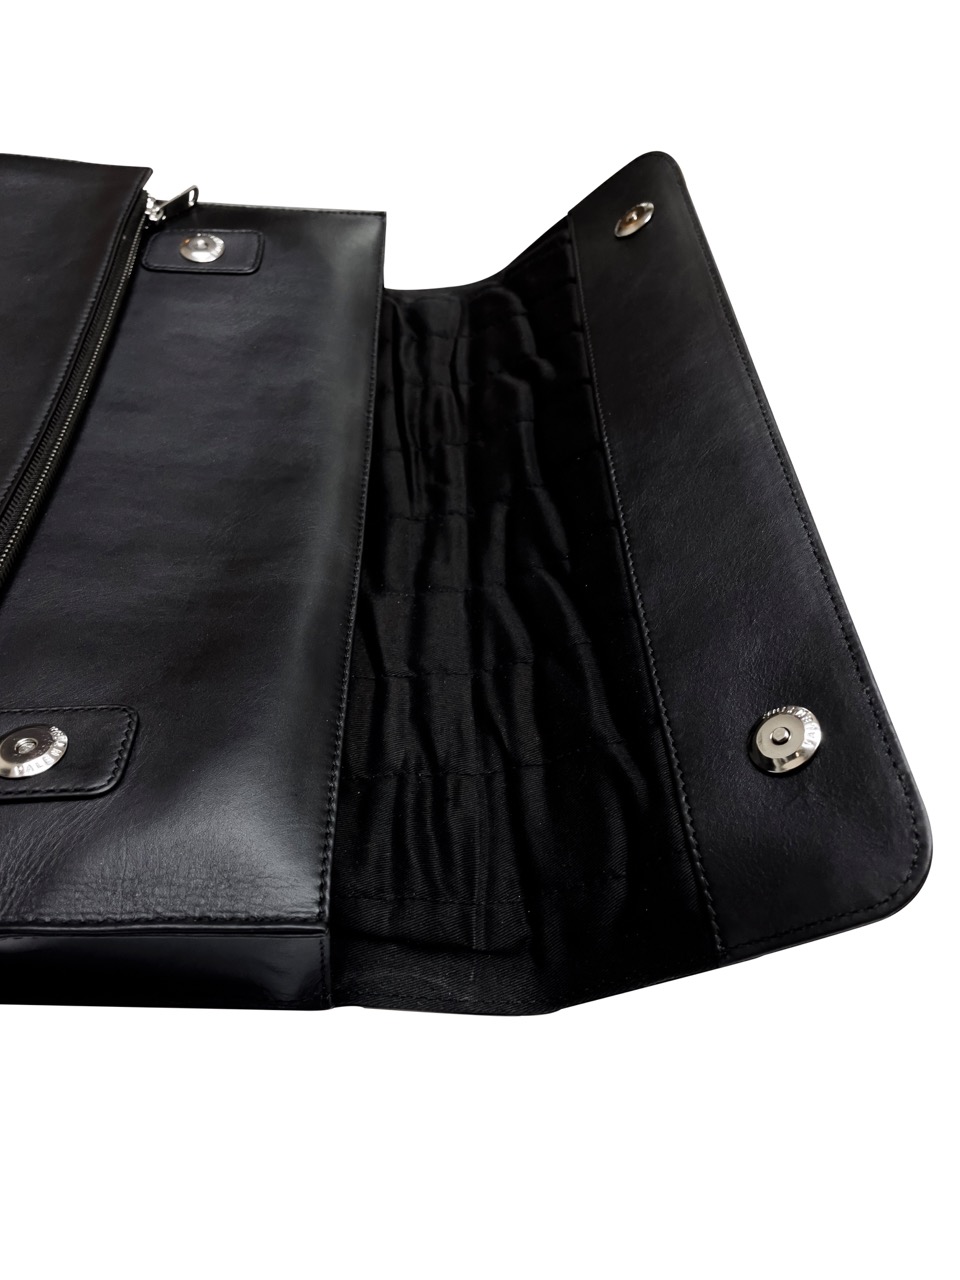 Black Smooth Leather Laptop Bag V2 (14